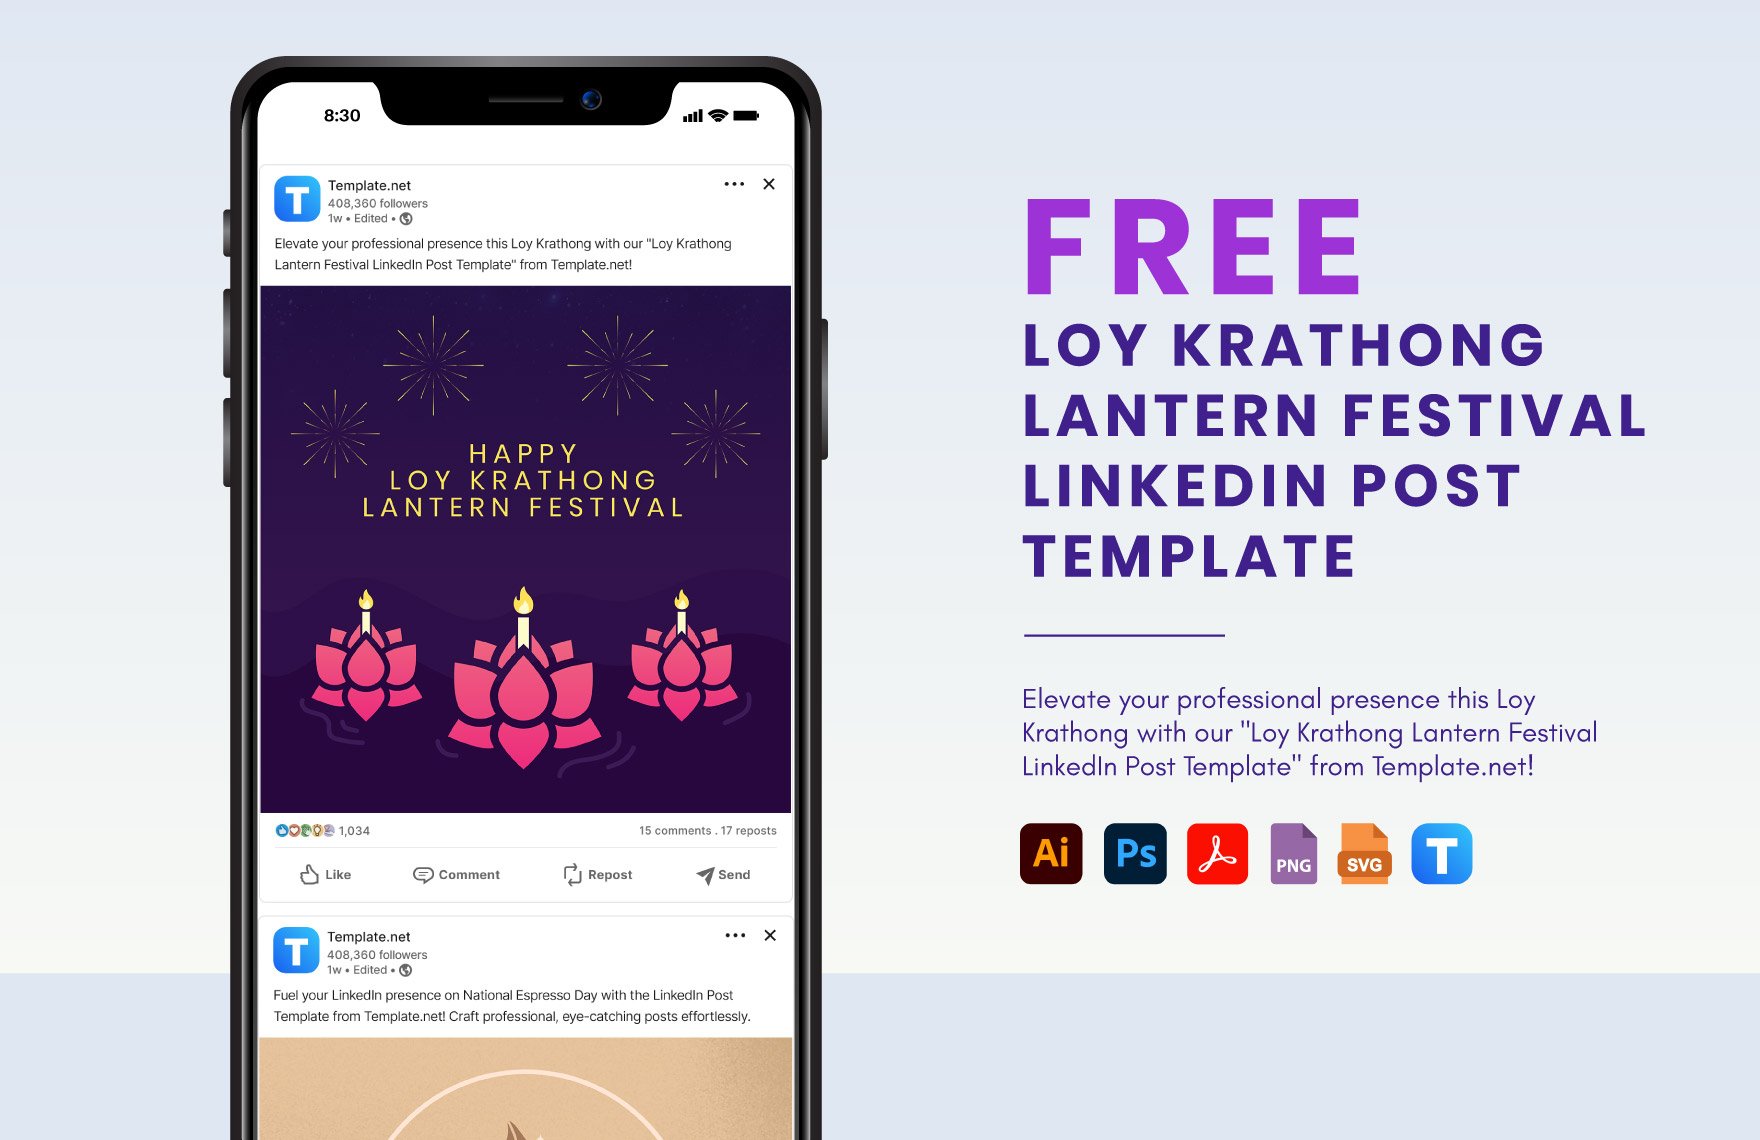 Free Loy Krathong Lantern Festival LinkedIn Post Template in PDF, Illustrator, PSD, SVG, PNG